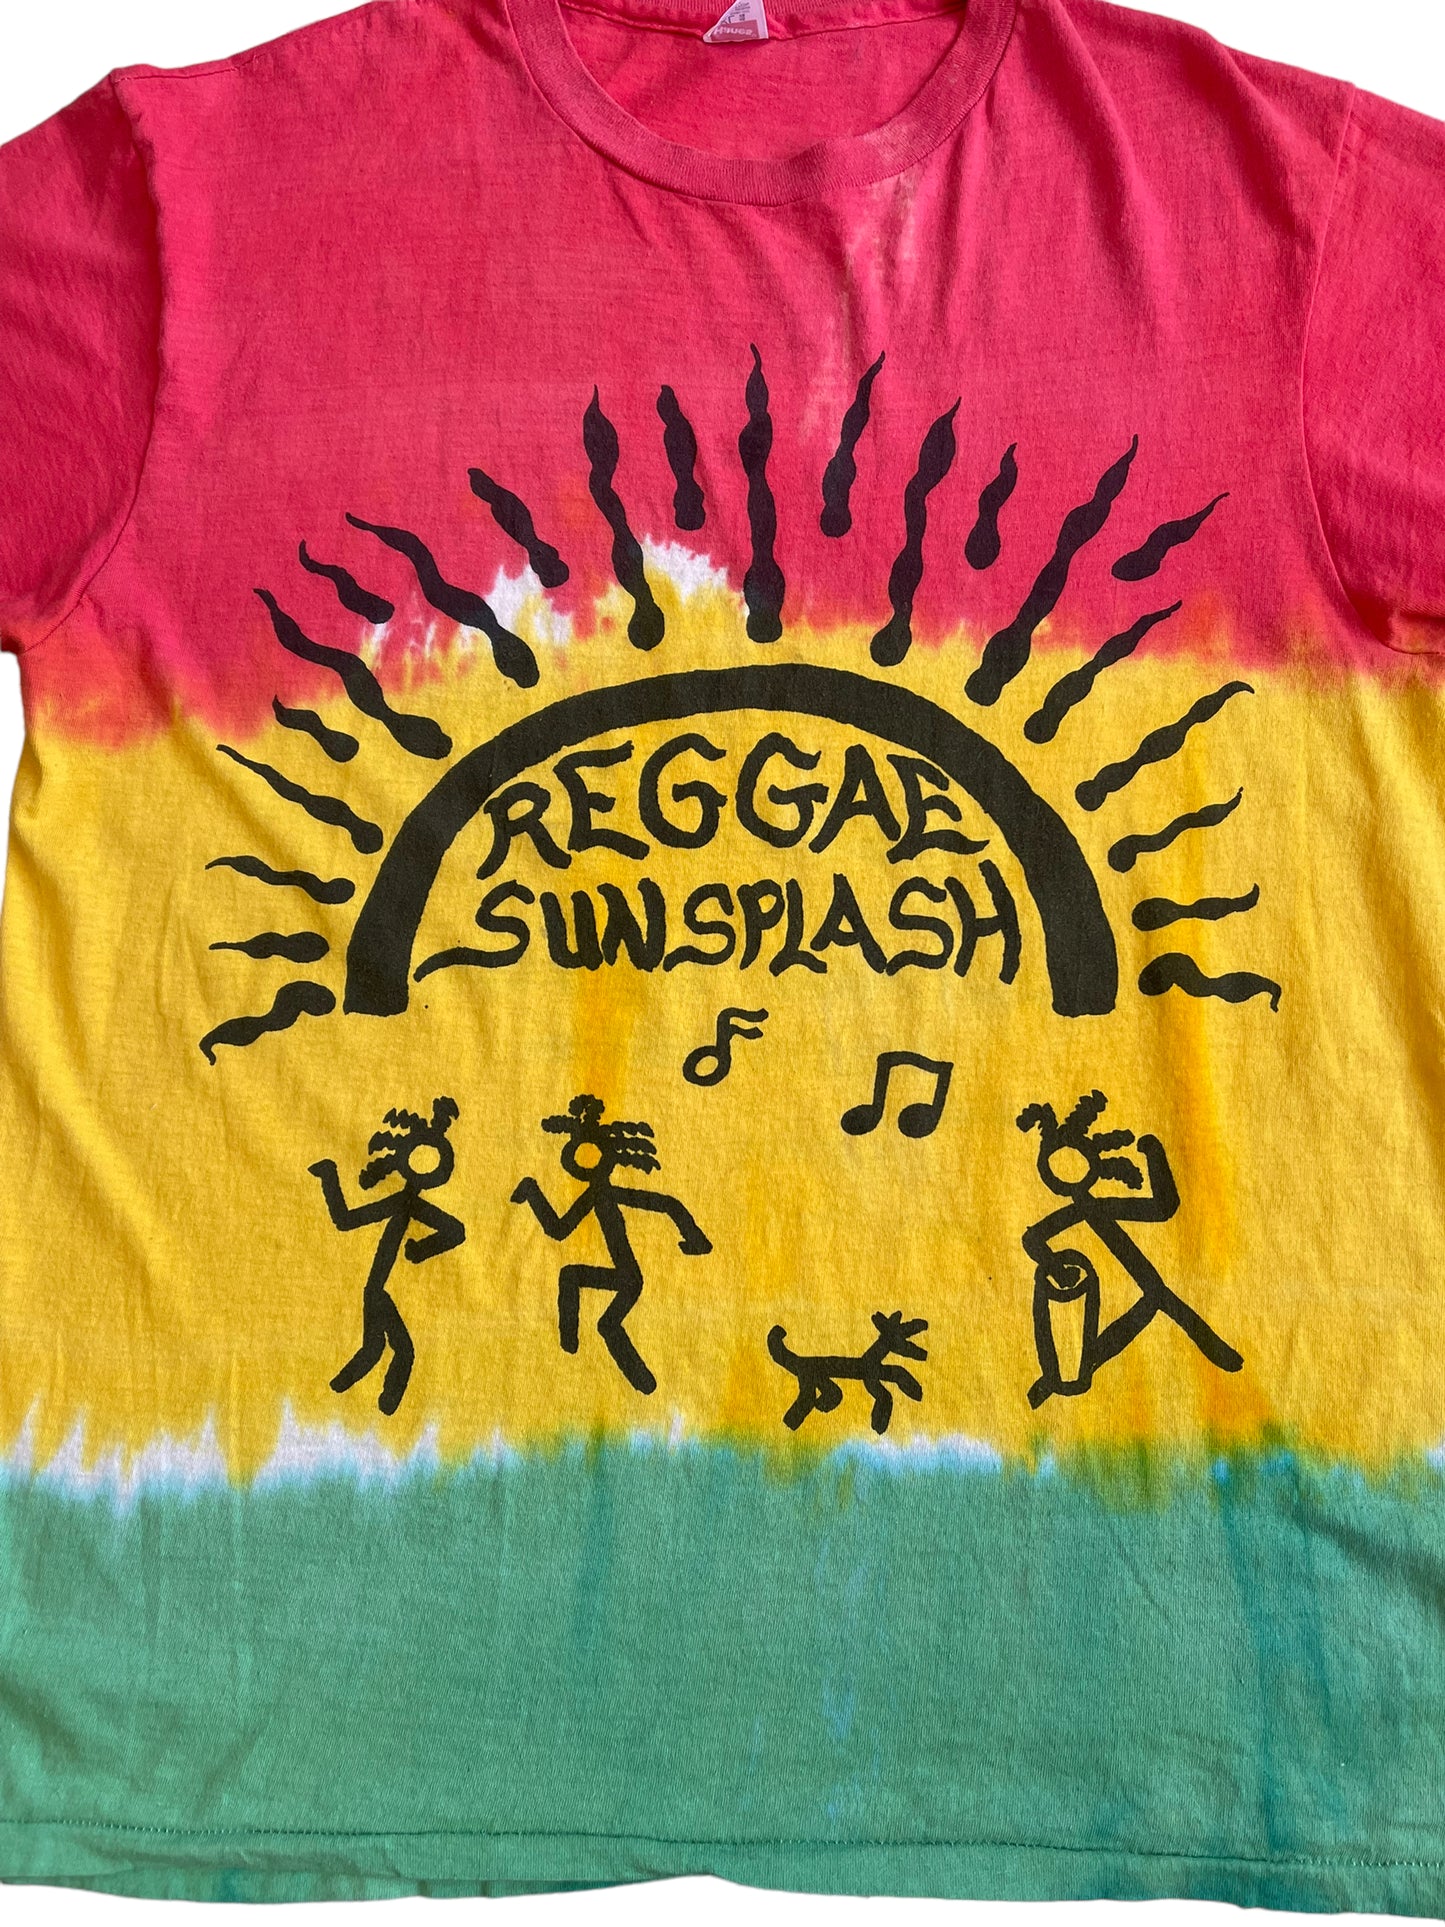 (L) 1989 Reggae Sun Splash Tee